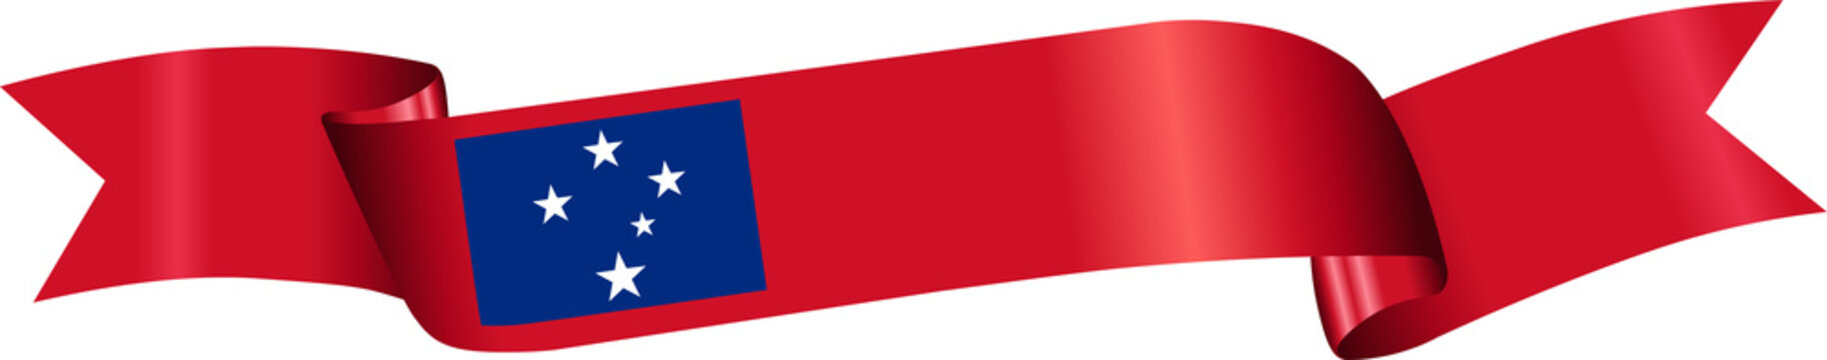 3D Flag of Samoa on ribbon.